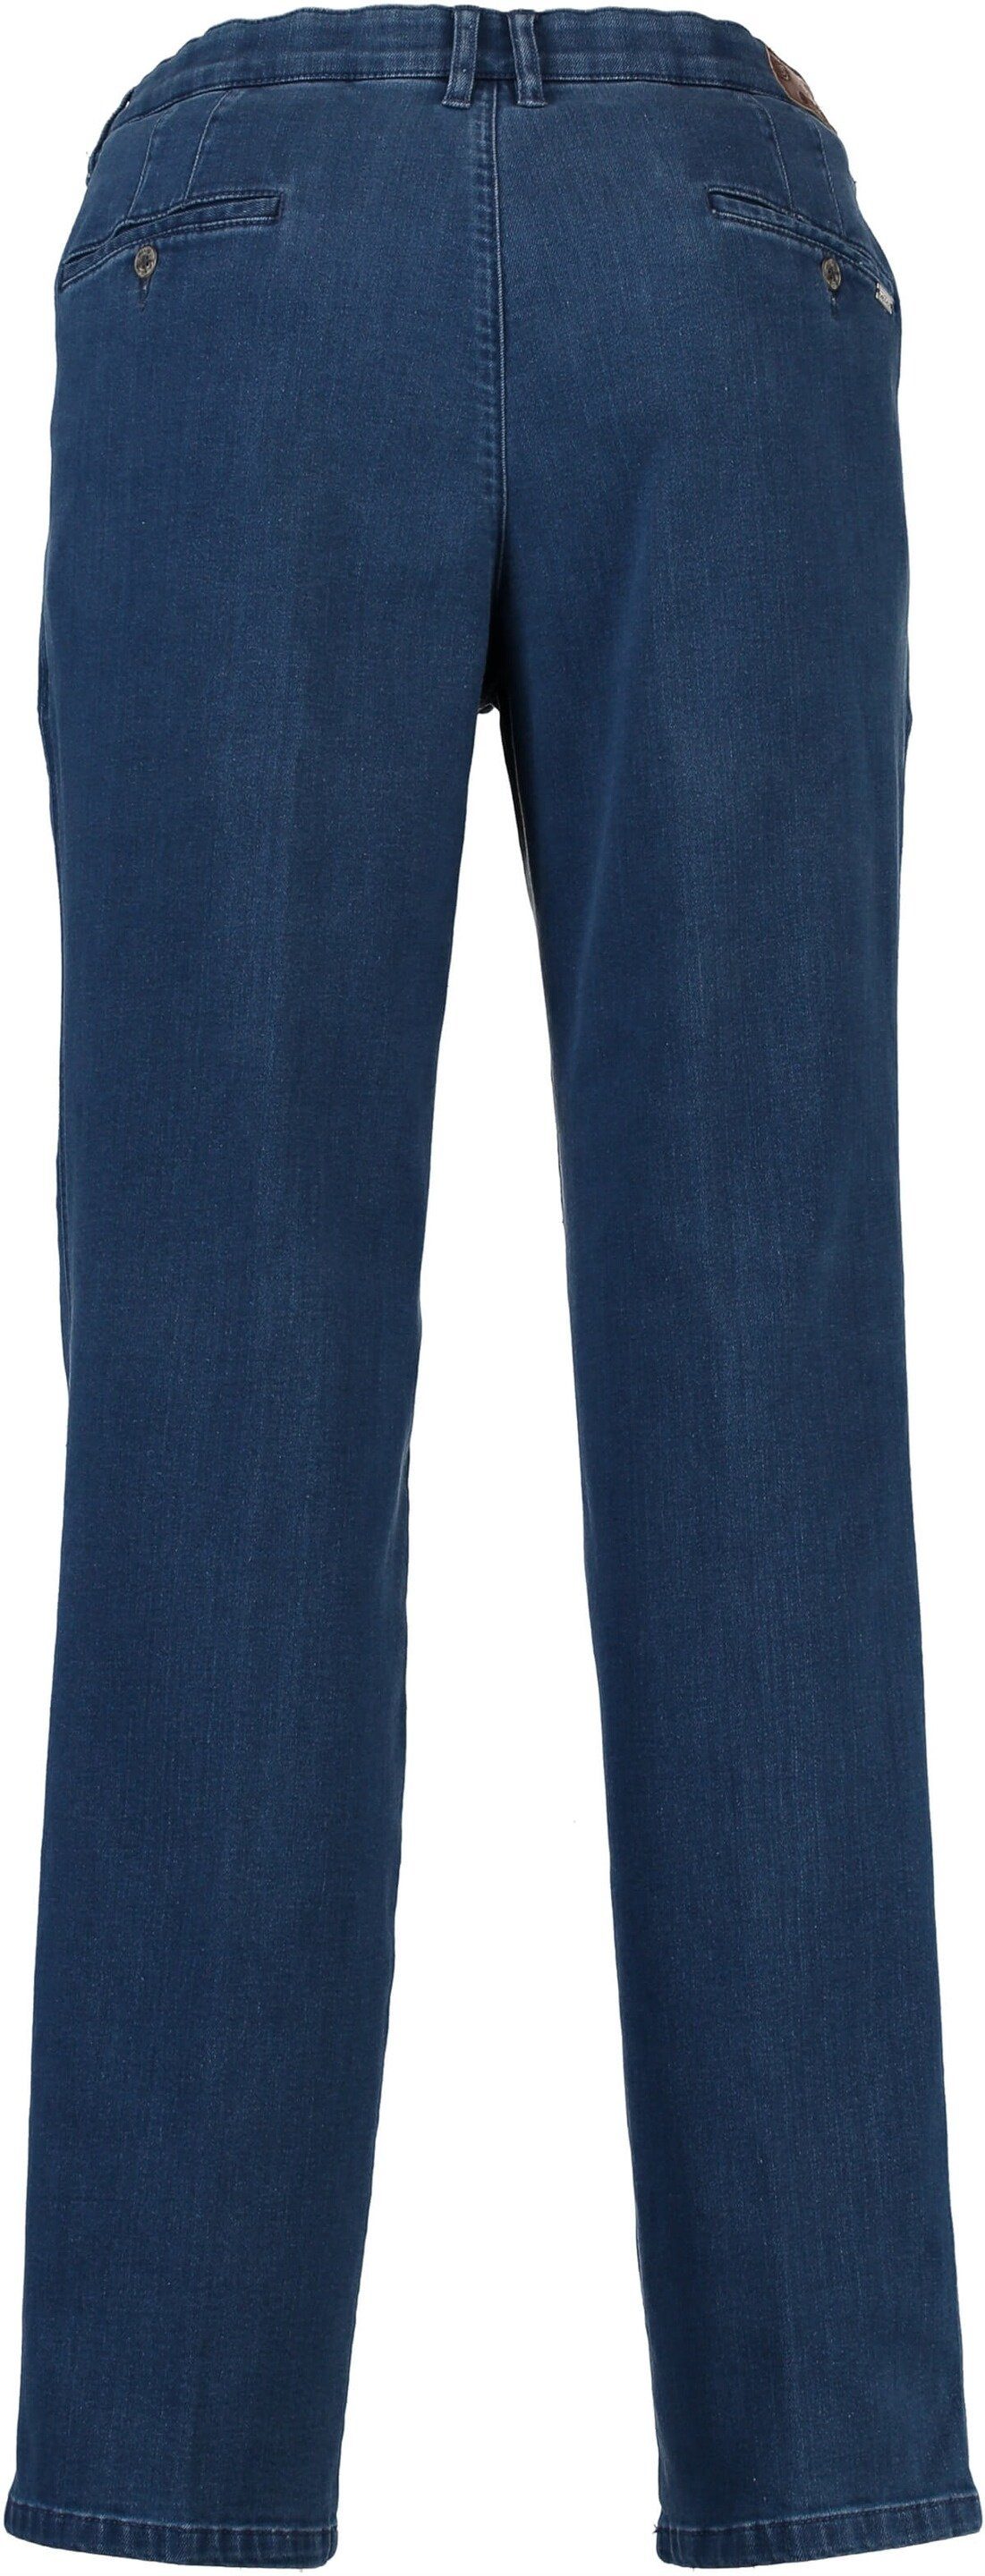 Hose Baumwoll-Stretch M.E.N.S. Regular-fit-Jeans m.e.n.s jeansblau